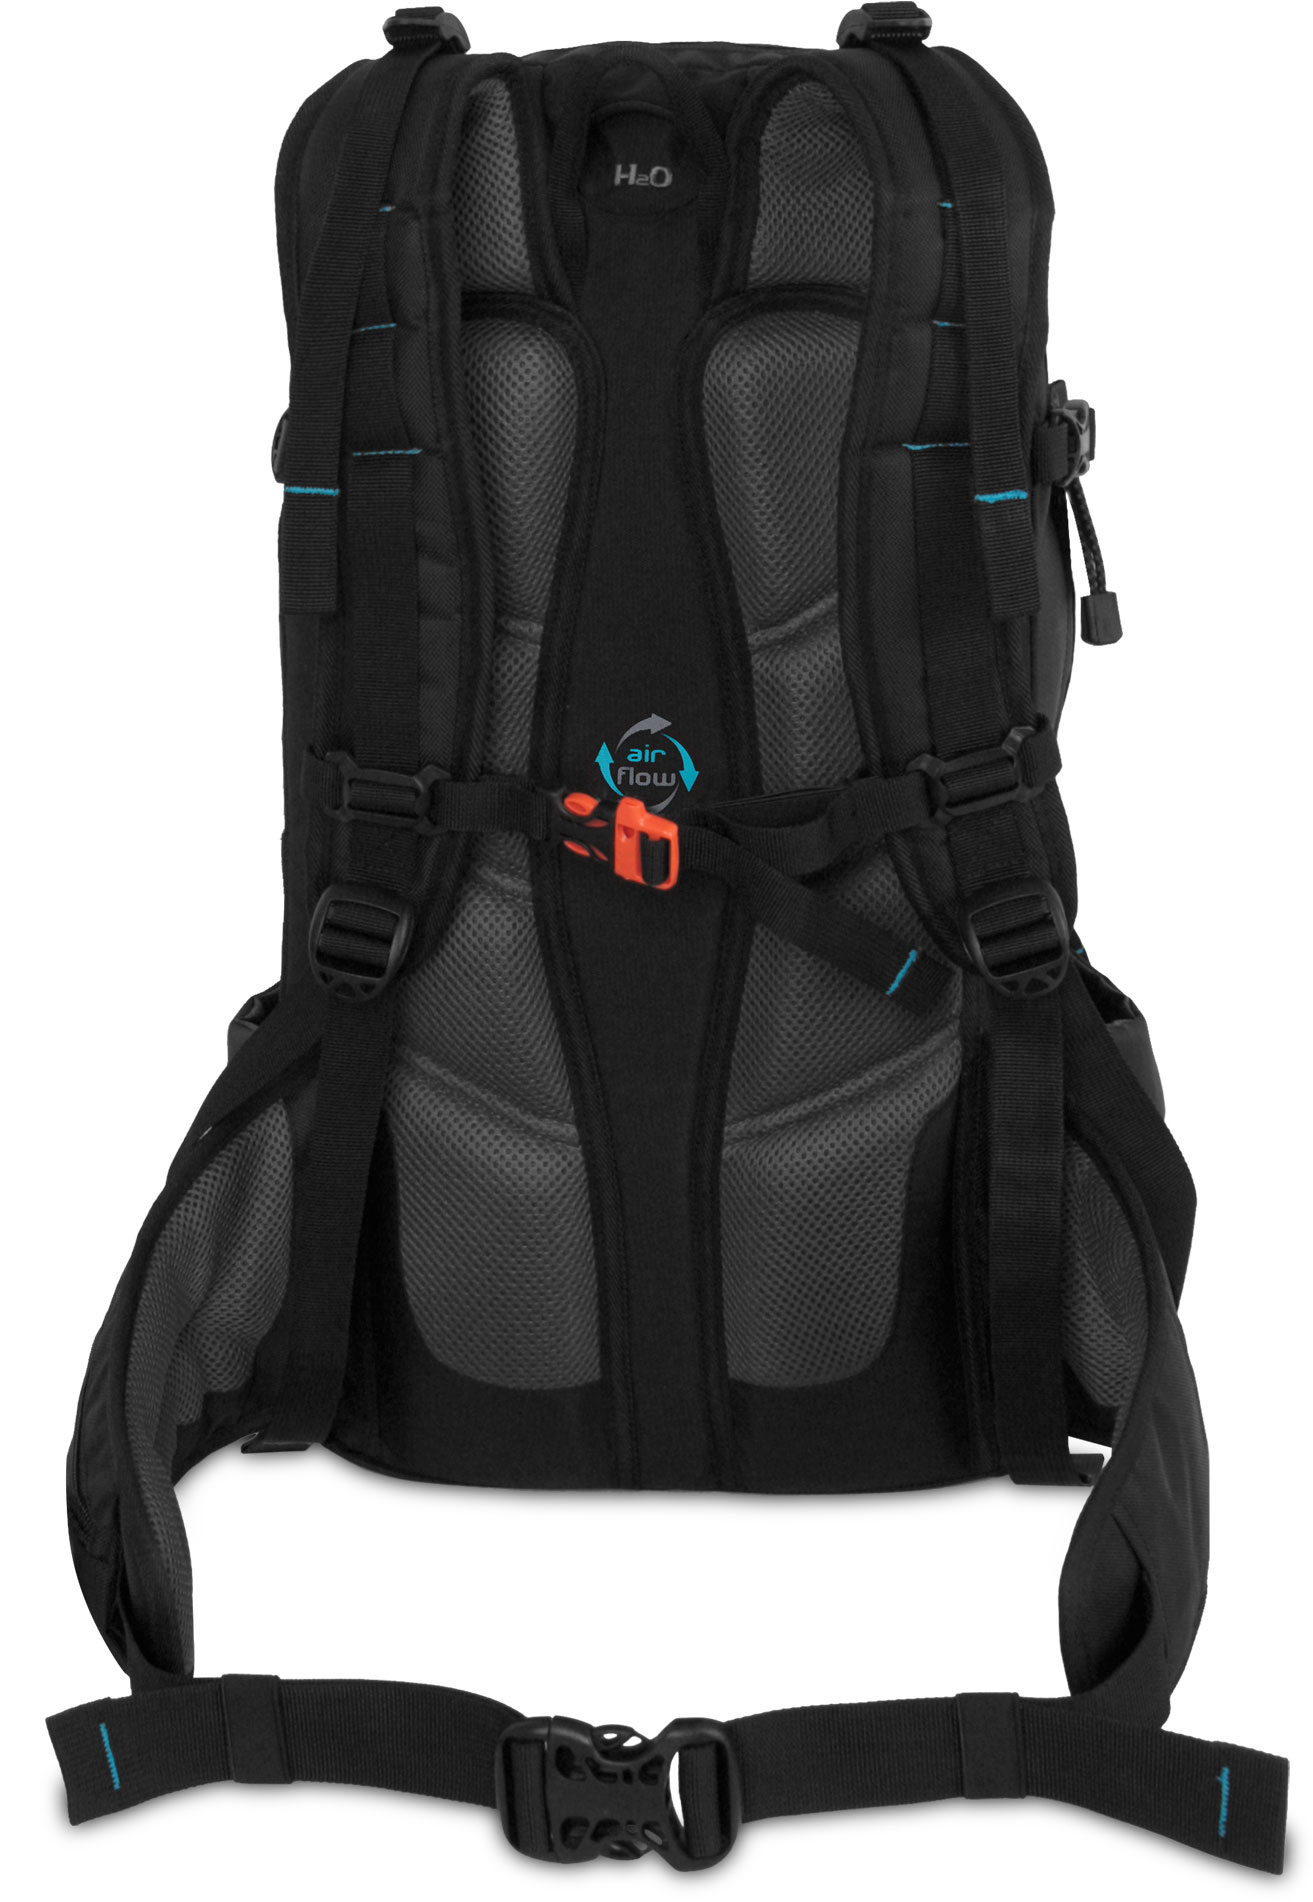 Double chamber ski mountaineering backpack